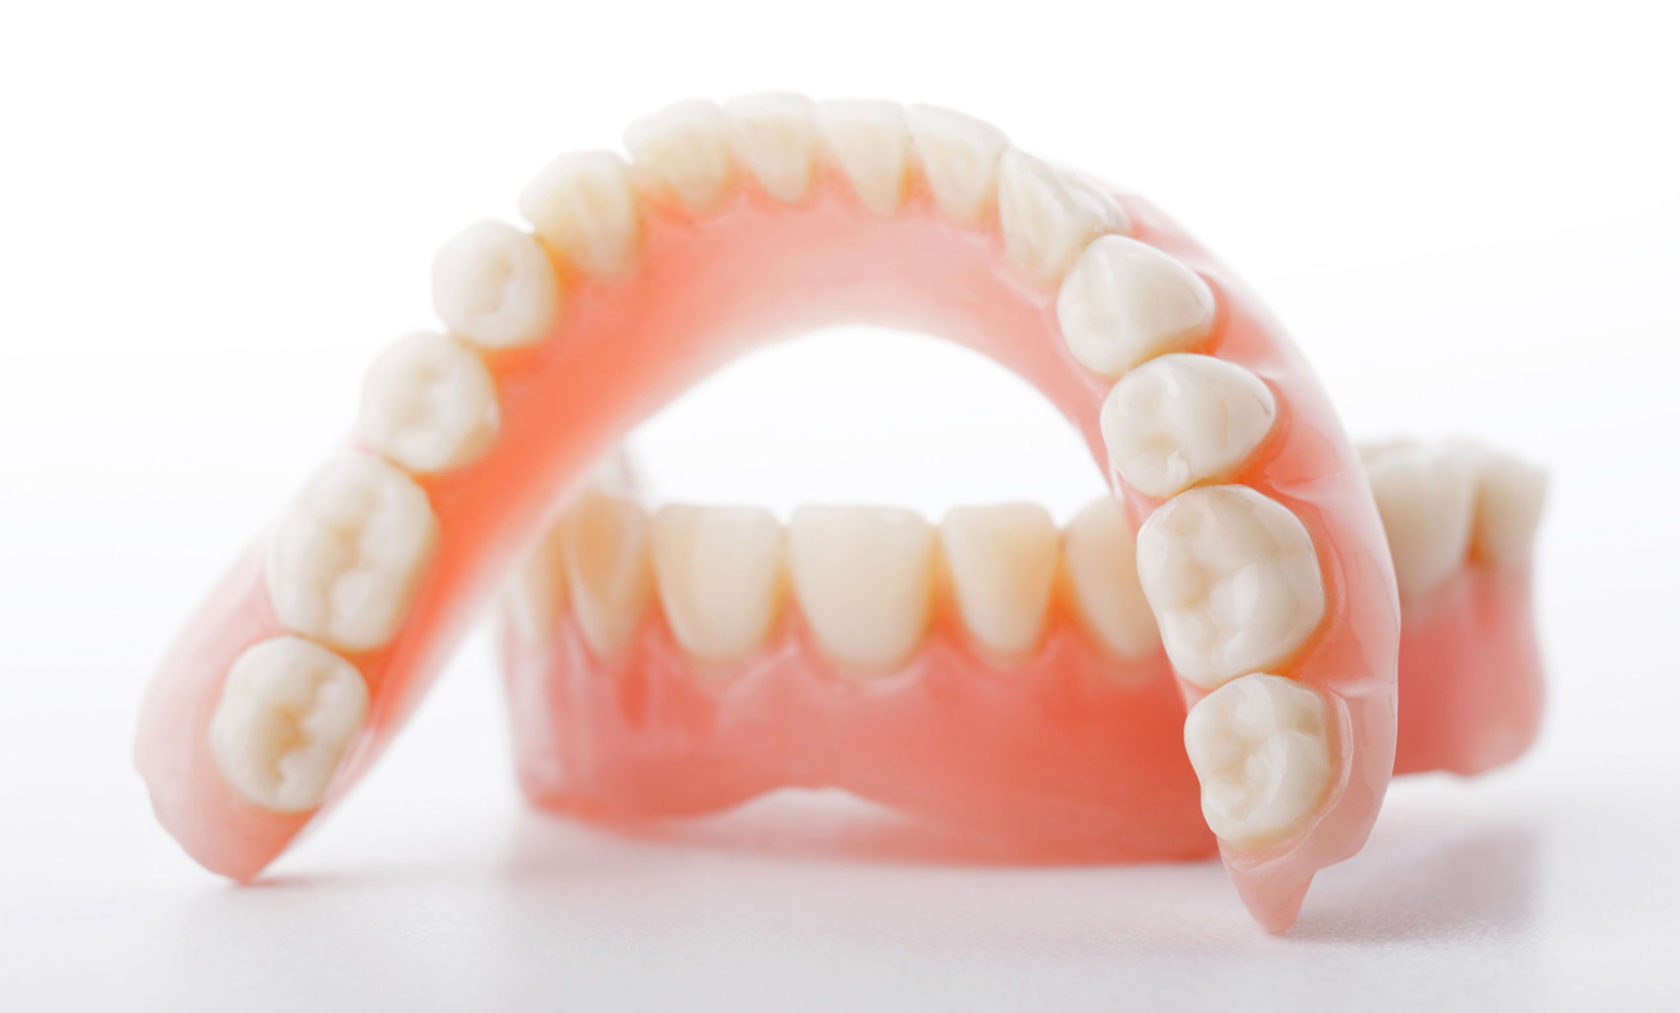 Наследственные проблемы развития зубов